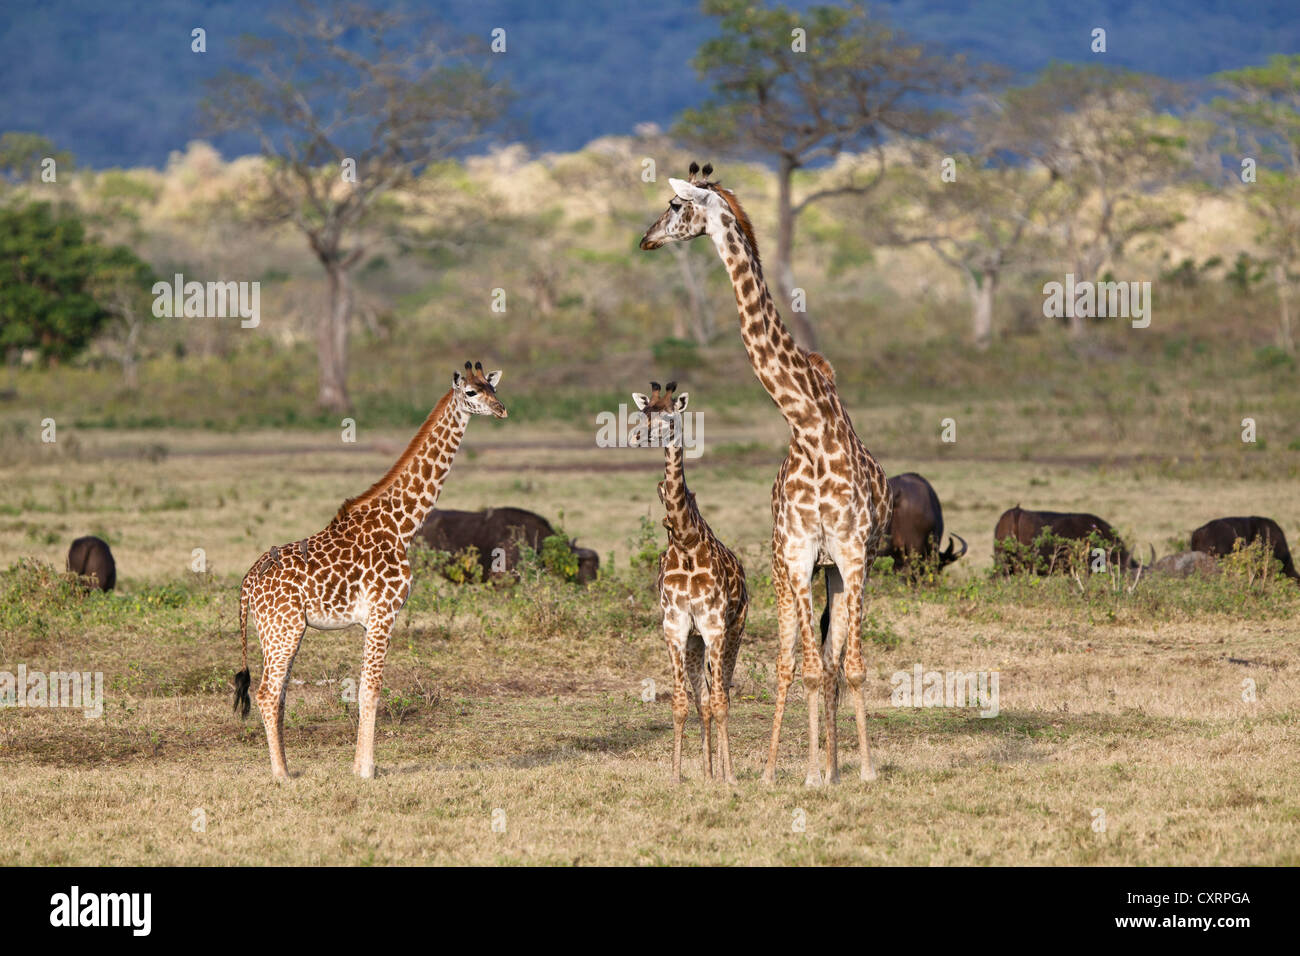 Massai, Maasai, Masai Giraffe or Kilimanjaro Giraffe (Giraffa camelopardalis tippelskirchi), with young and African buffalos Stock Photo